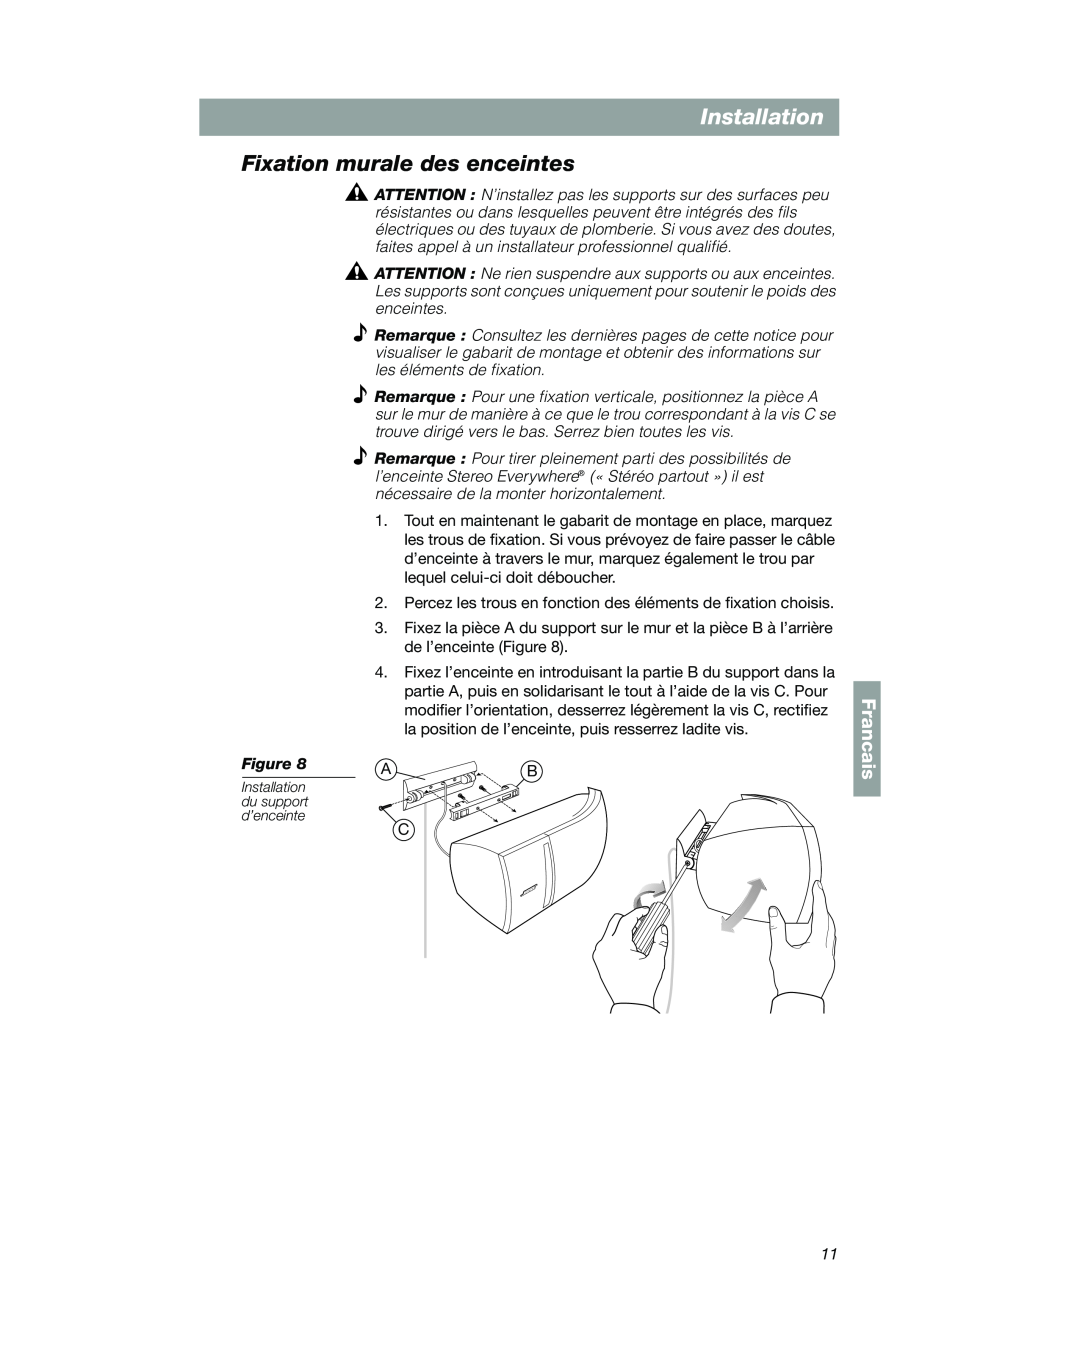 Bose VCS-10 manual Fixation murale des enceintes, Francais, Installation du support d’enceinte 